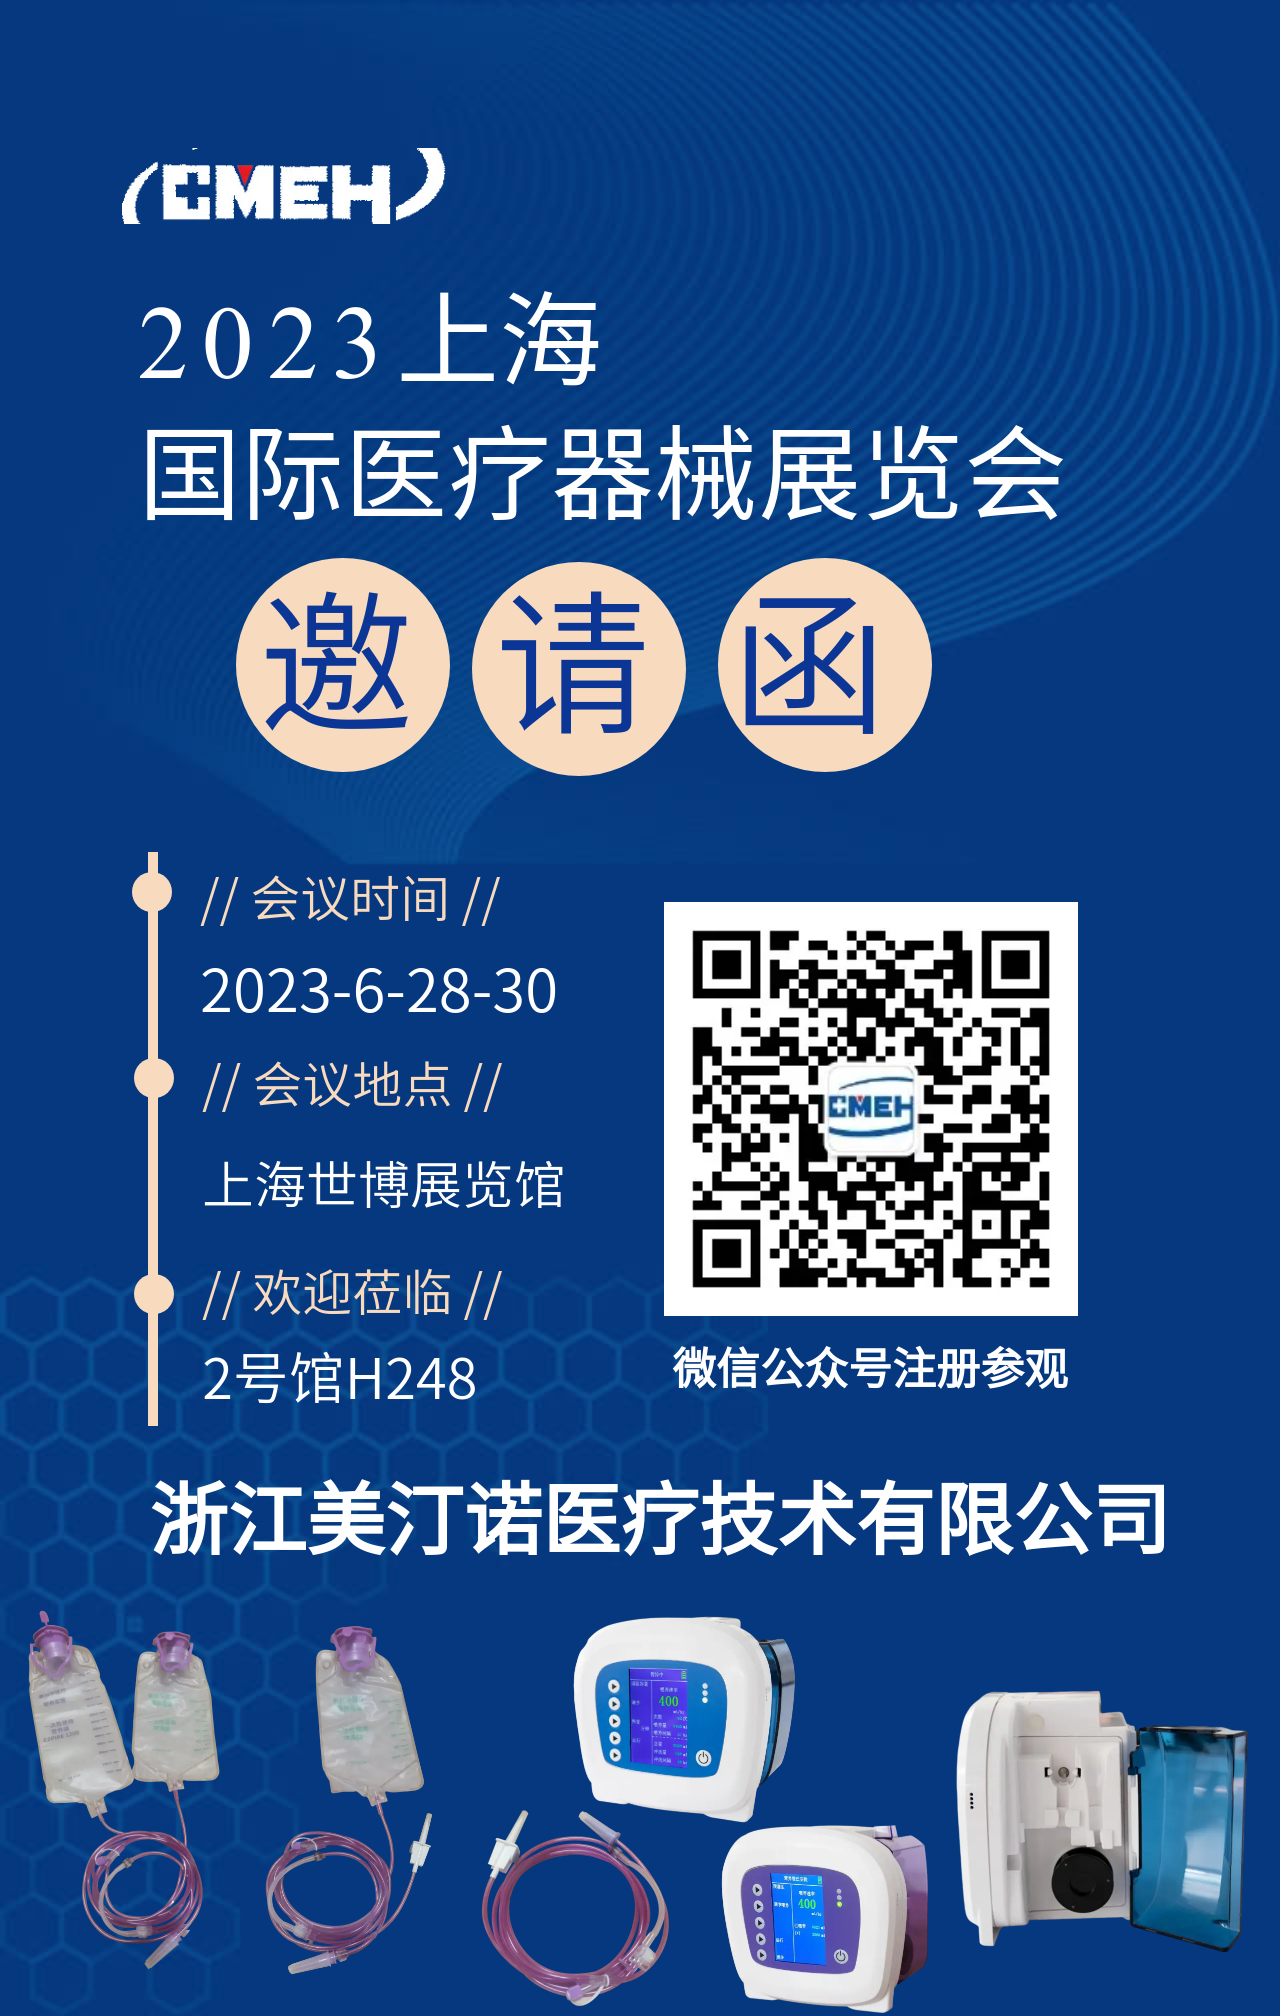 展商推荐：浙江美汀诺医疗技术有限公司邀您参观上海医疗器械展览会